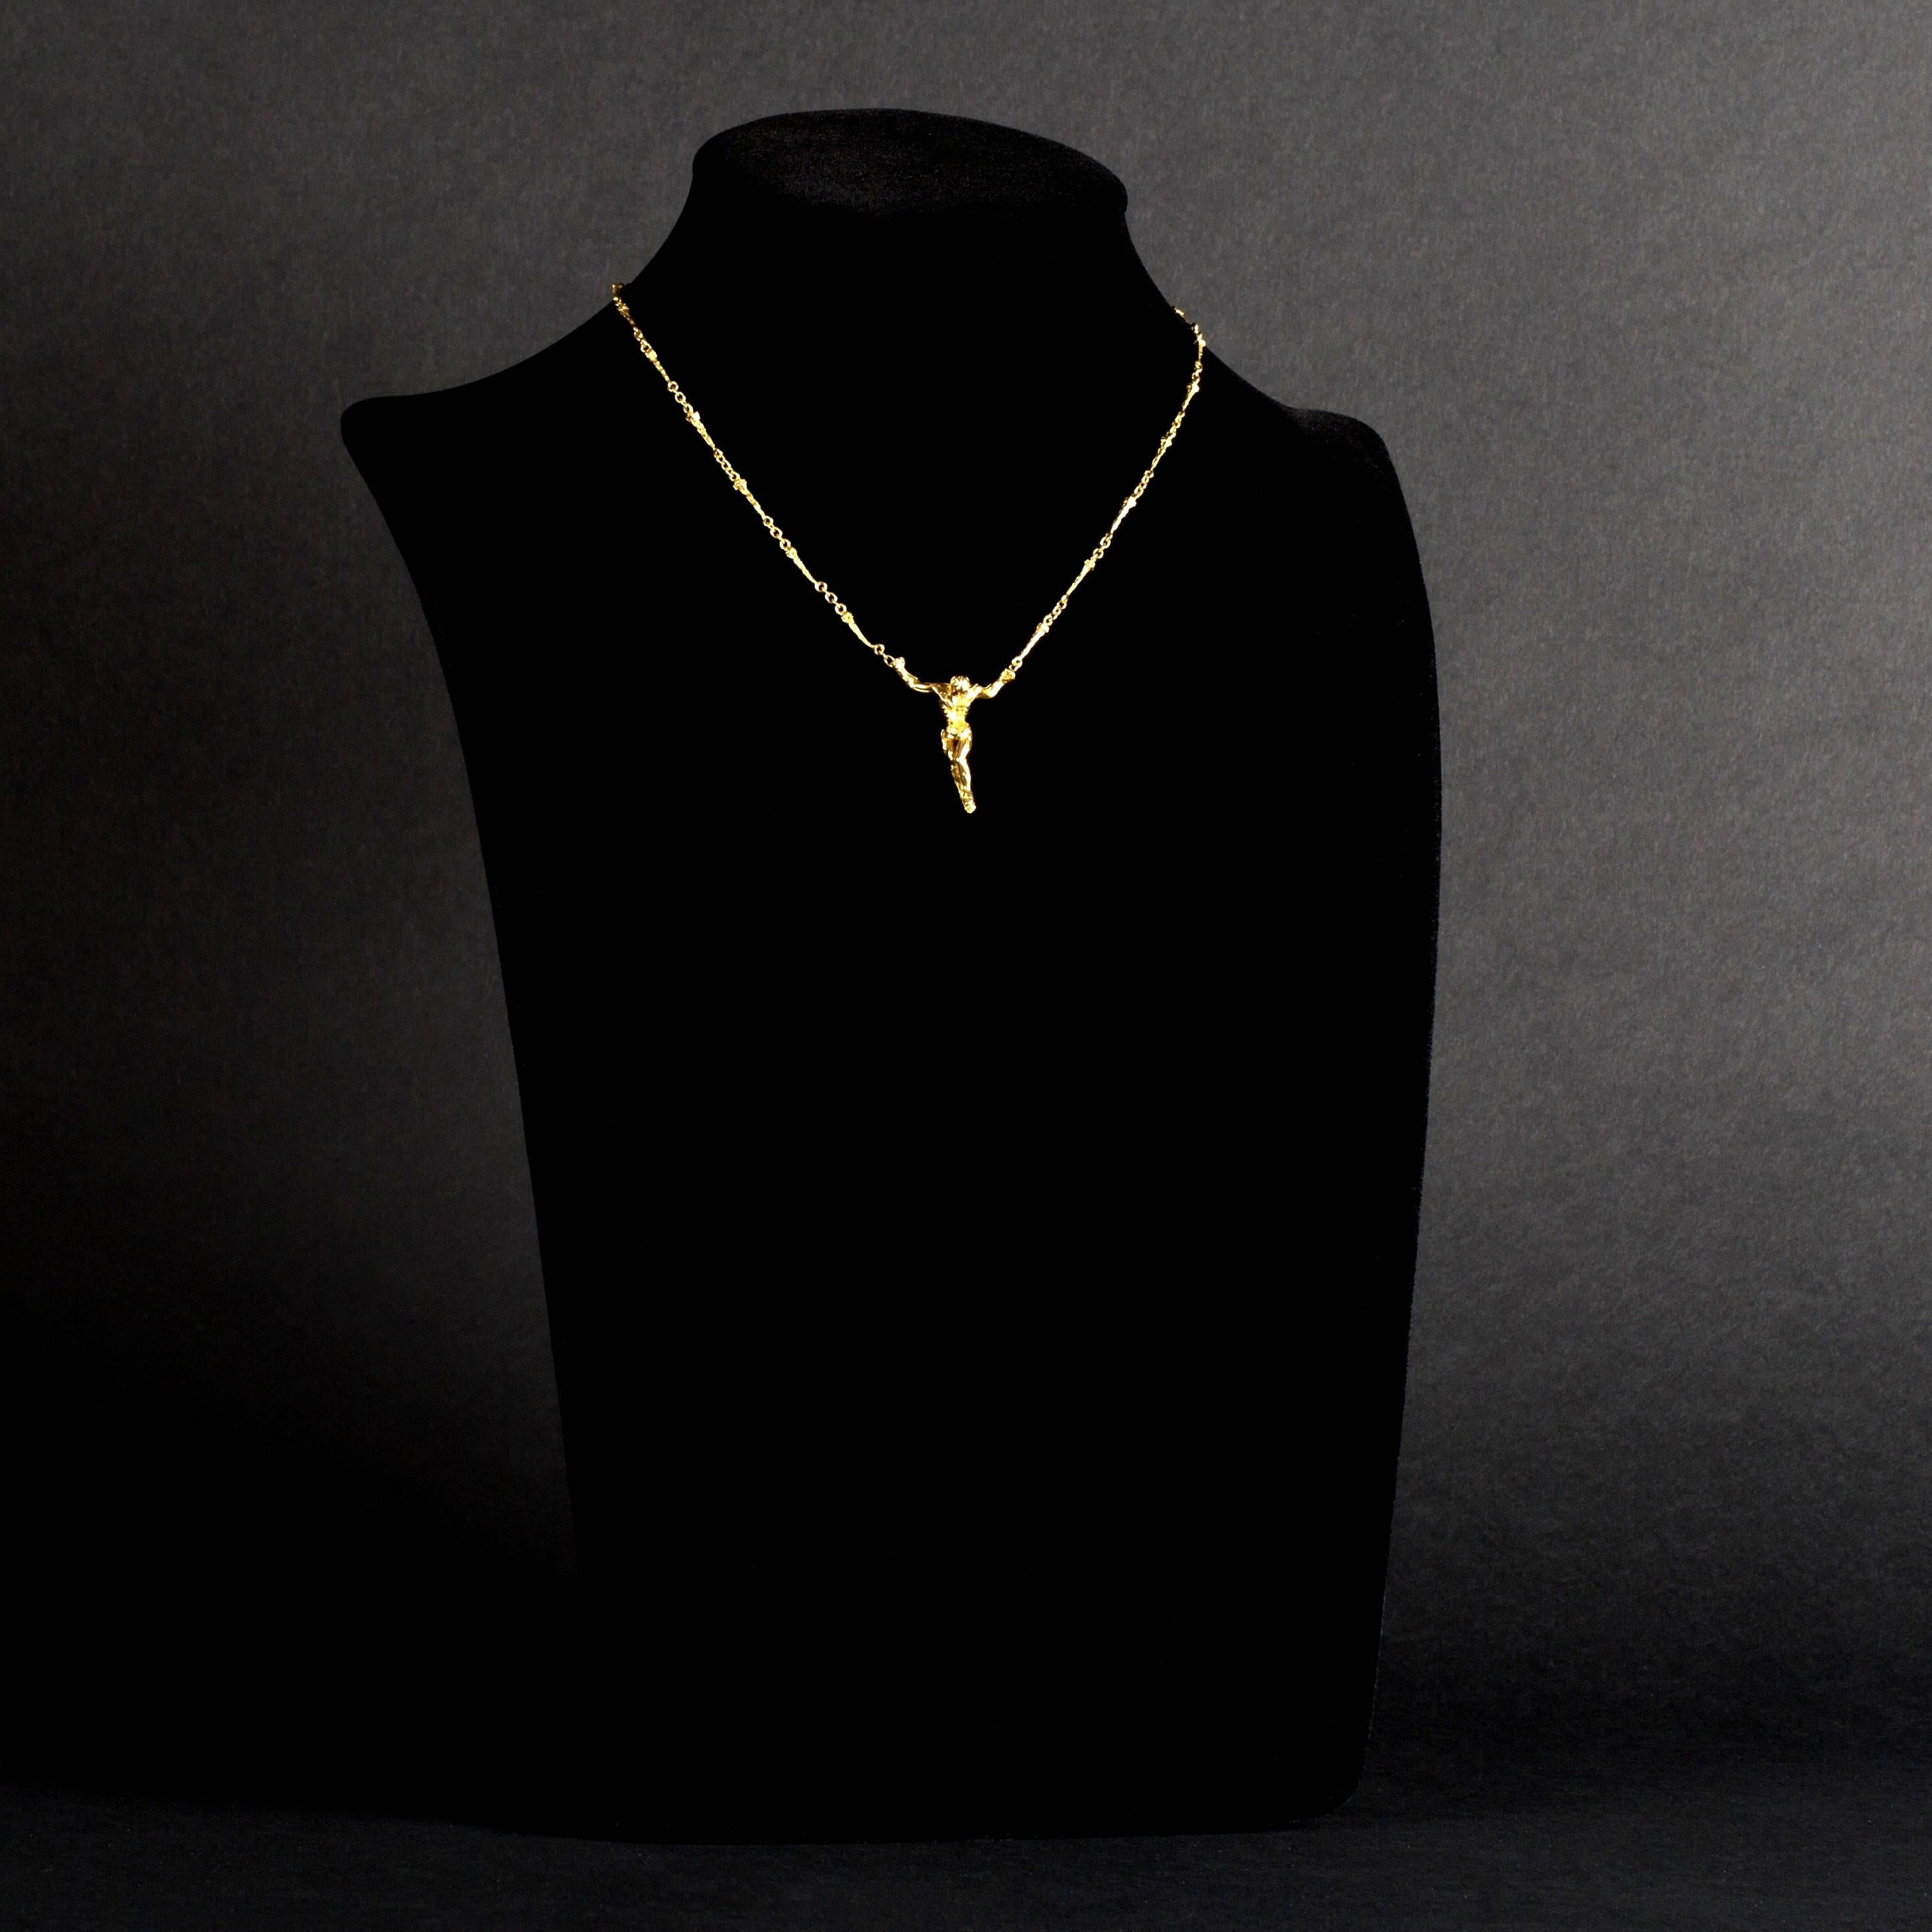 Salvador Dali - Christus - Signierte Gold Halskette
18k Gelbgold Original Halskette - signiert - Auflage von 1000 
1970 
Verkauft mit einem Echtheitszertifikat
Diese exklusive Halskette ist eine Kreation des berühmten Künstlers Salvador Dali. Die